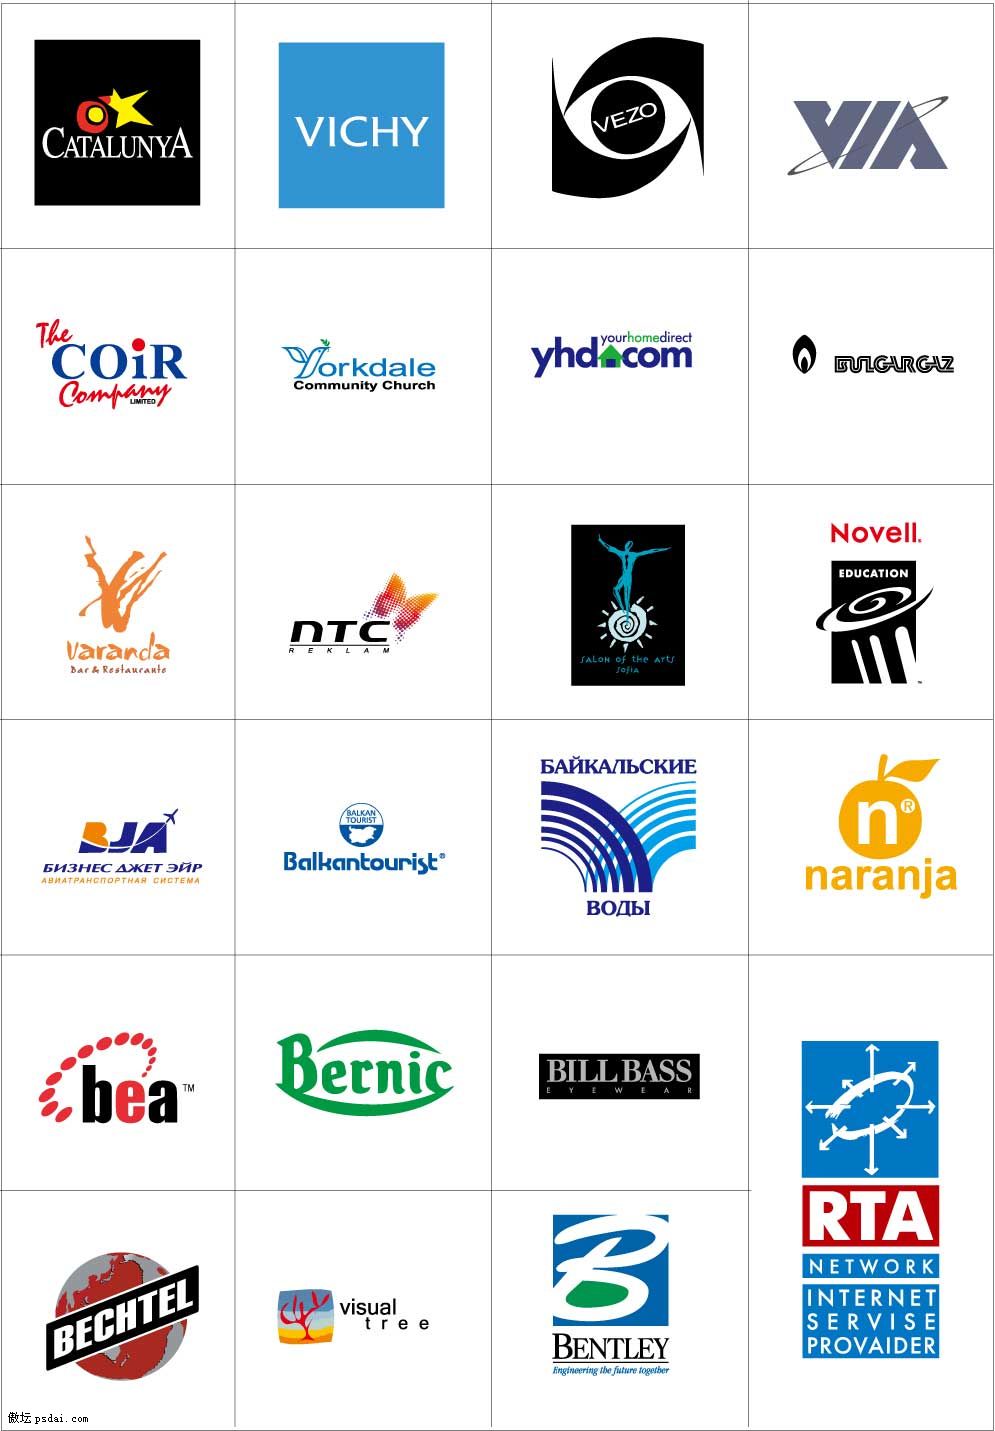 国外知名品牌标志logo一批-矢量素材区 - 共享素材汇总-百图汇设计